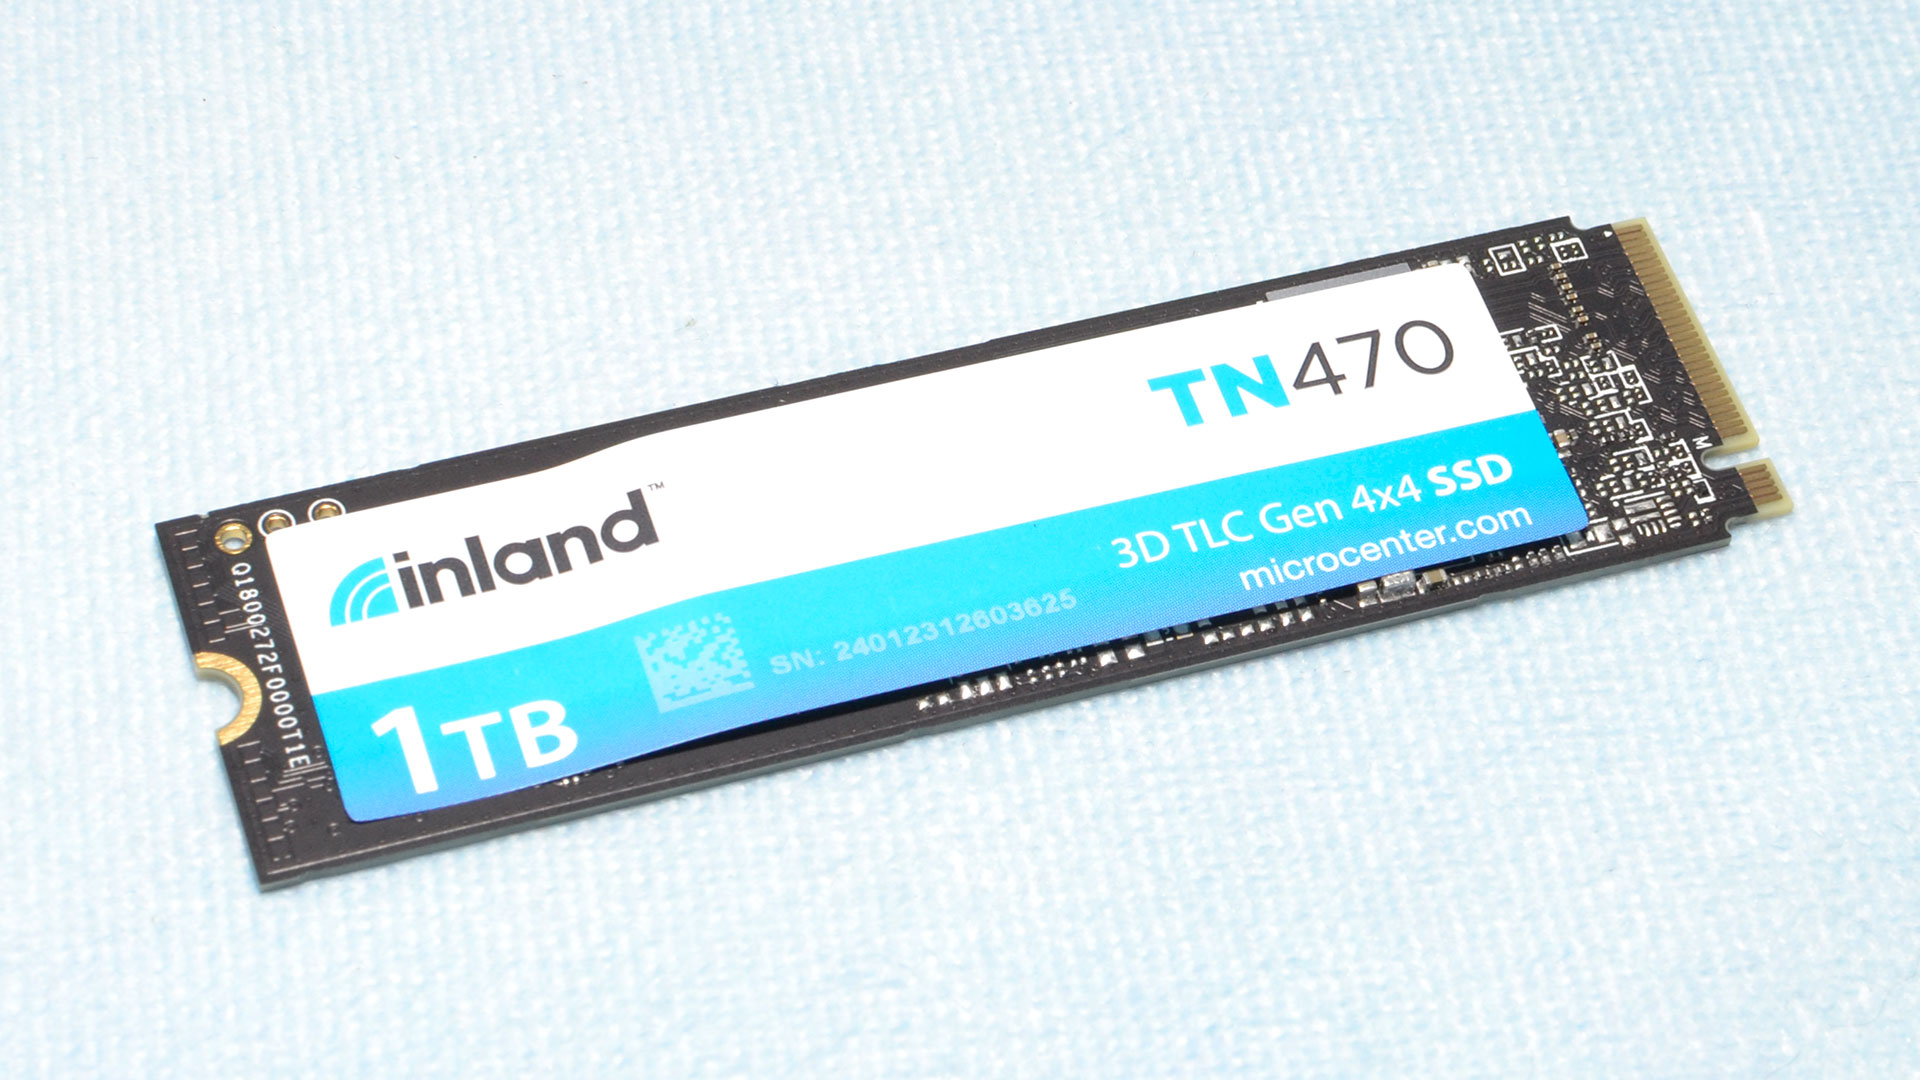 Inland TN470 1TB/2TB SSD